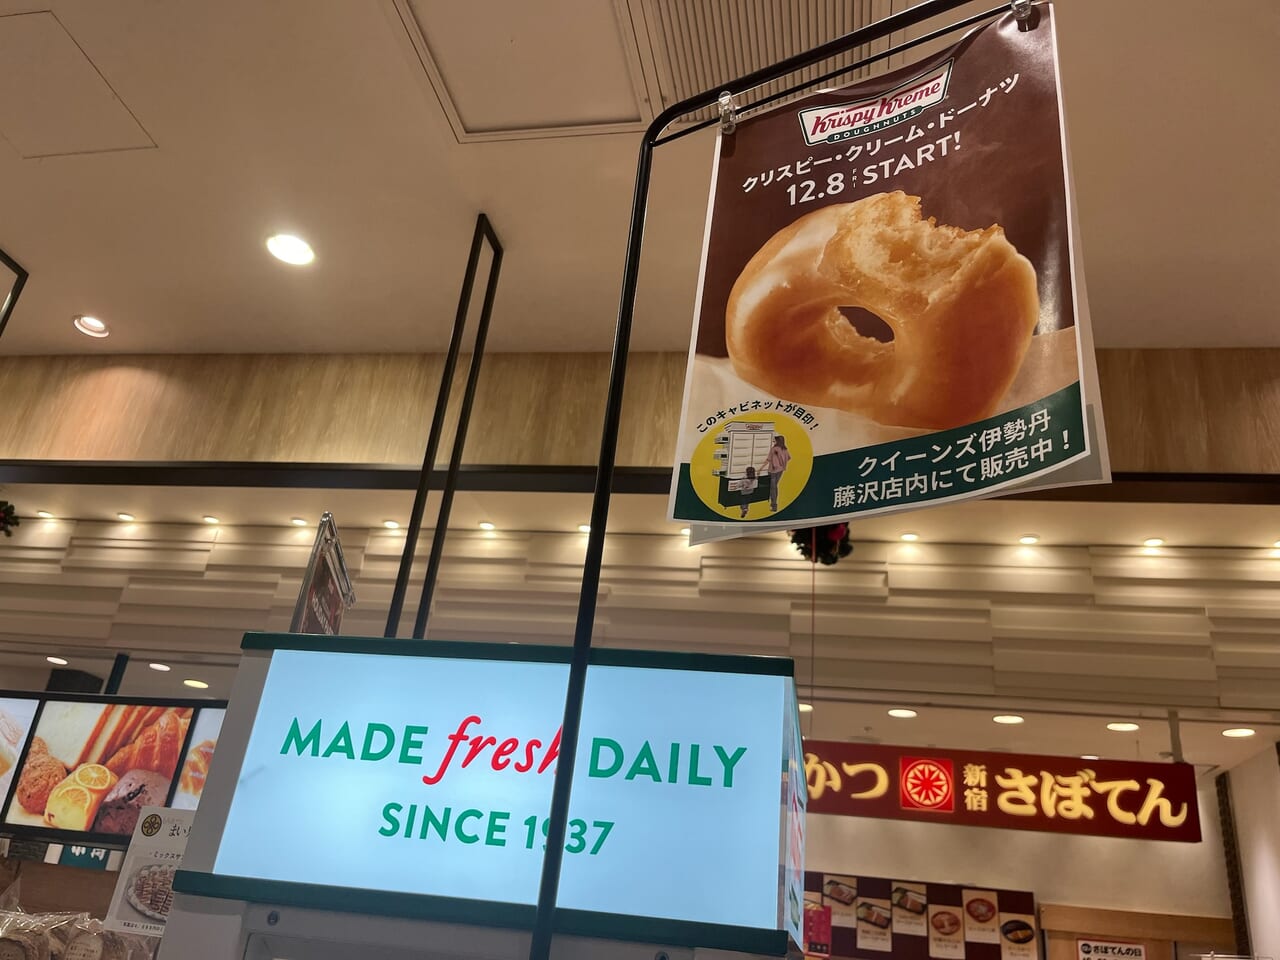 ルミネ藤沢クイーンズ伊勢丹で販売開始したクリスピー・クリーム・ドーナツ